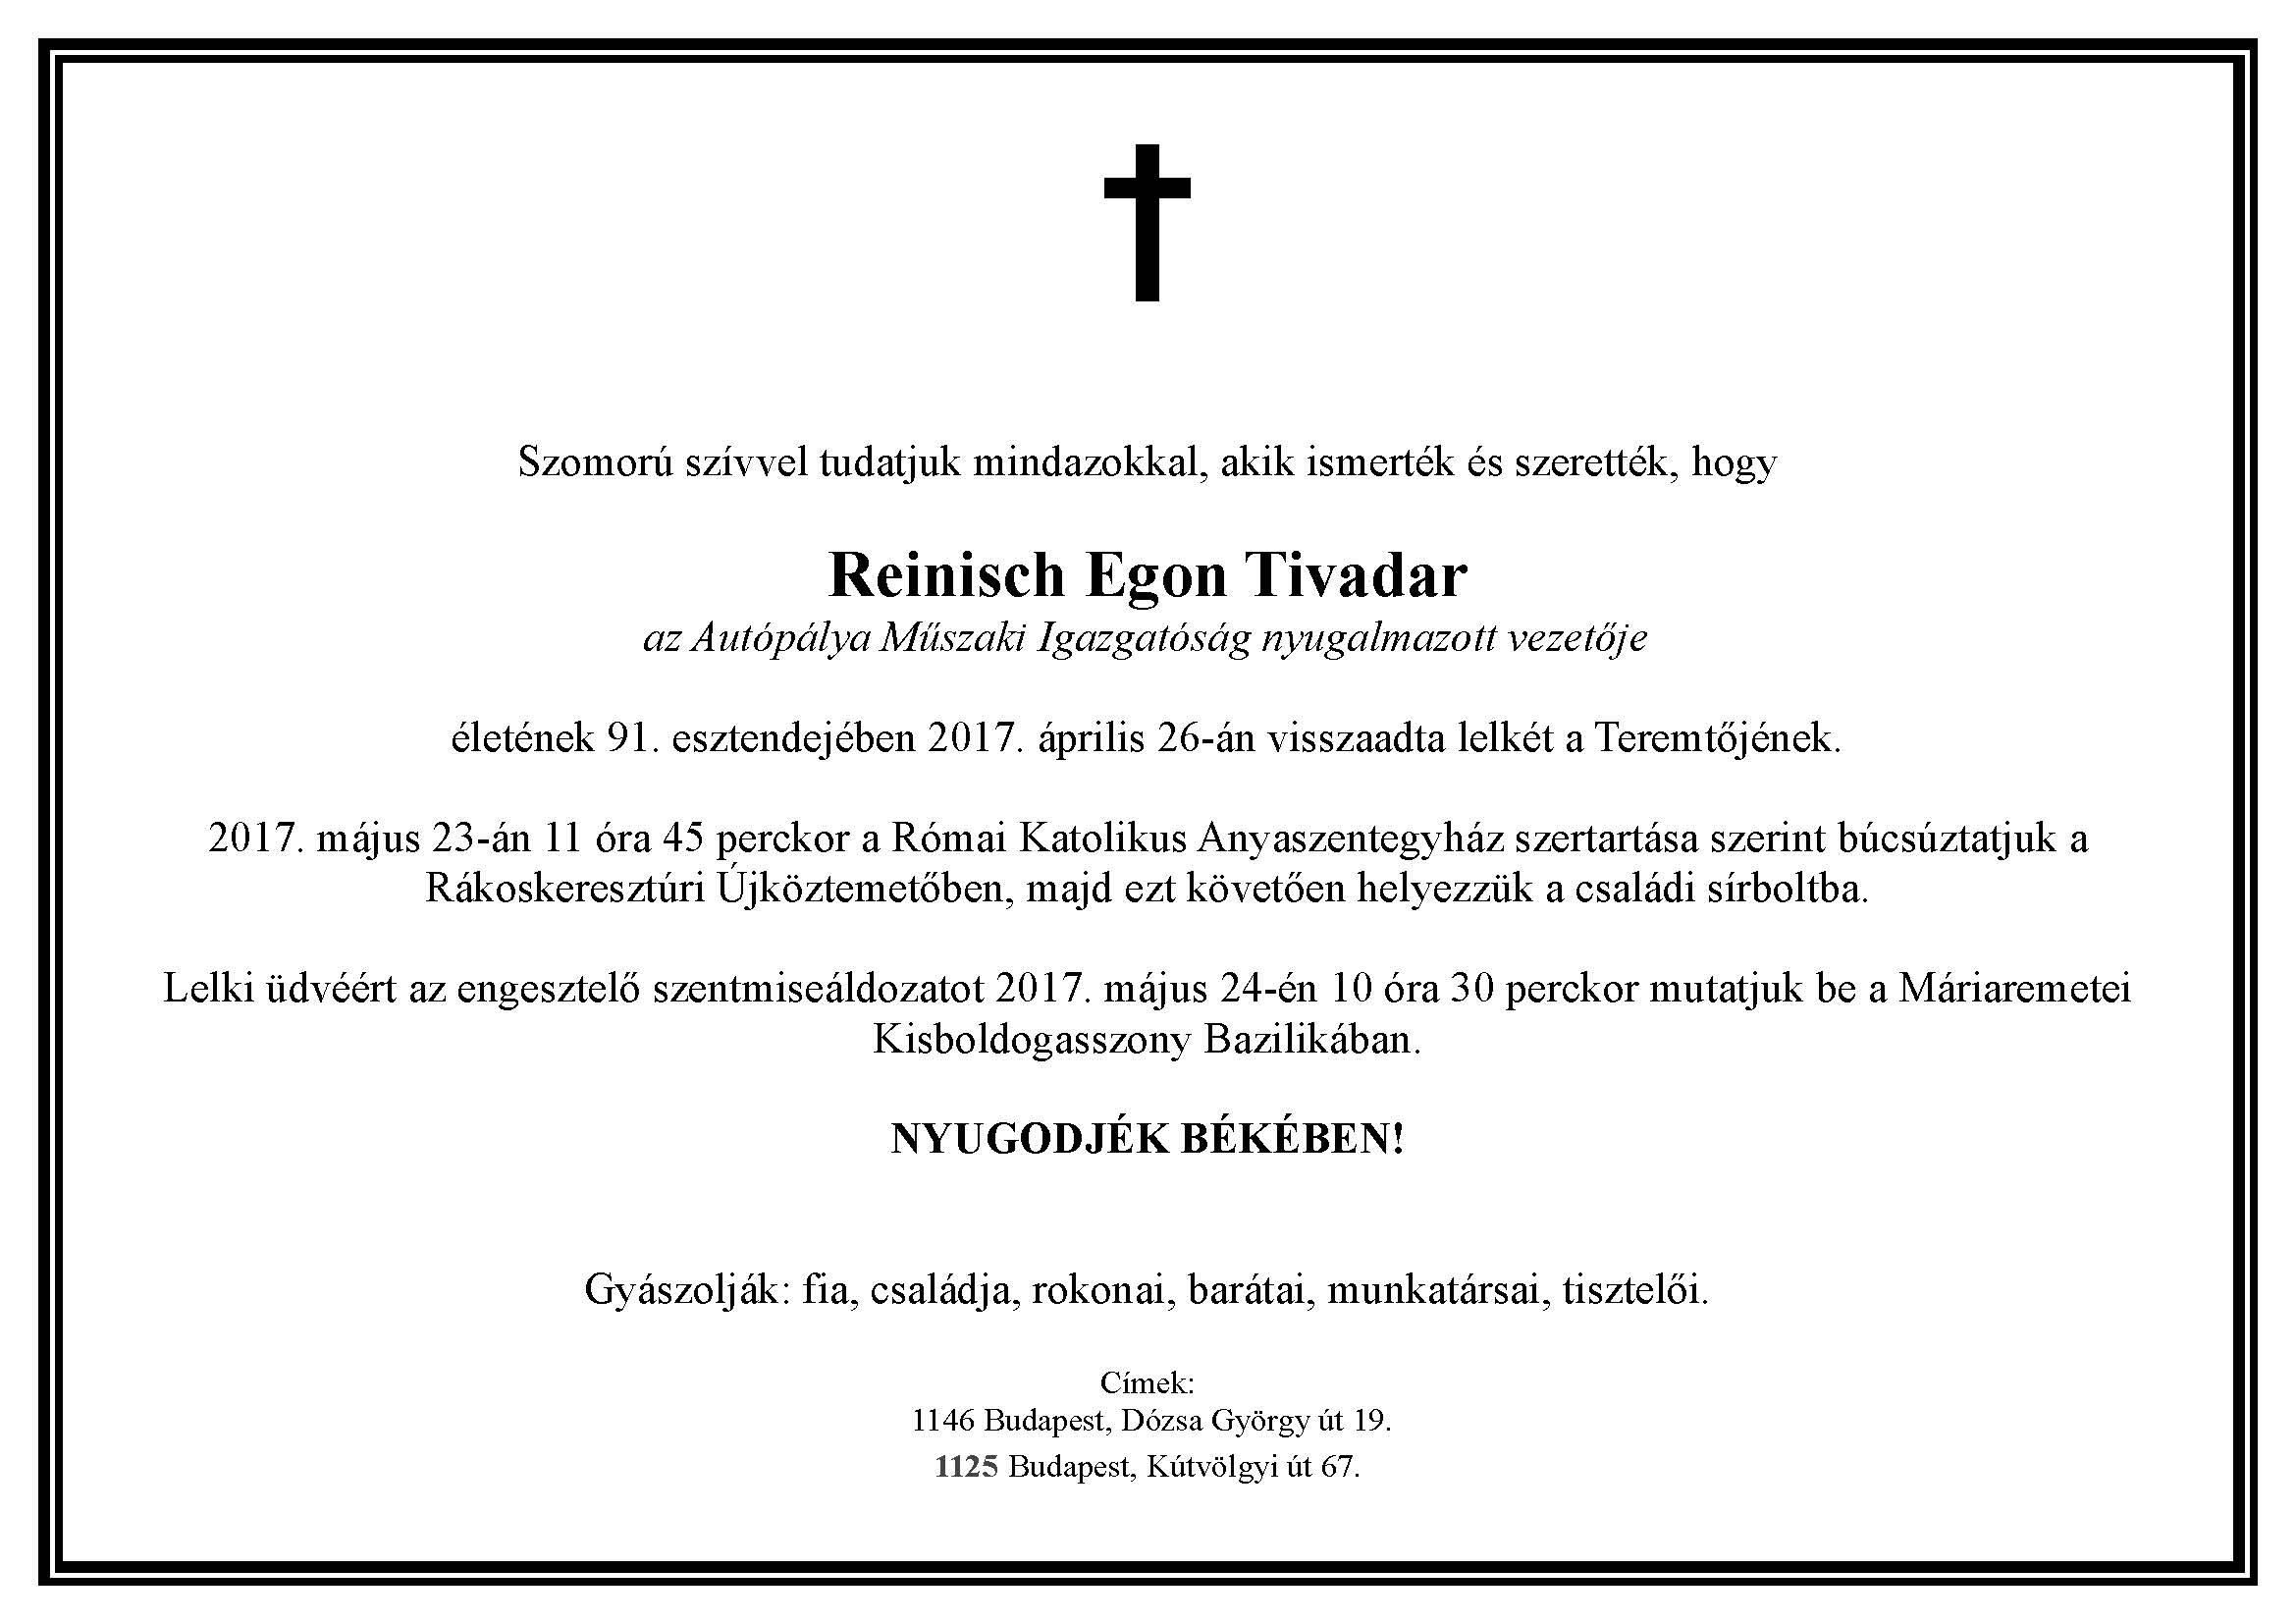 Gyászjelentés - Reinisch Egon Tivadar